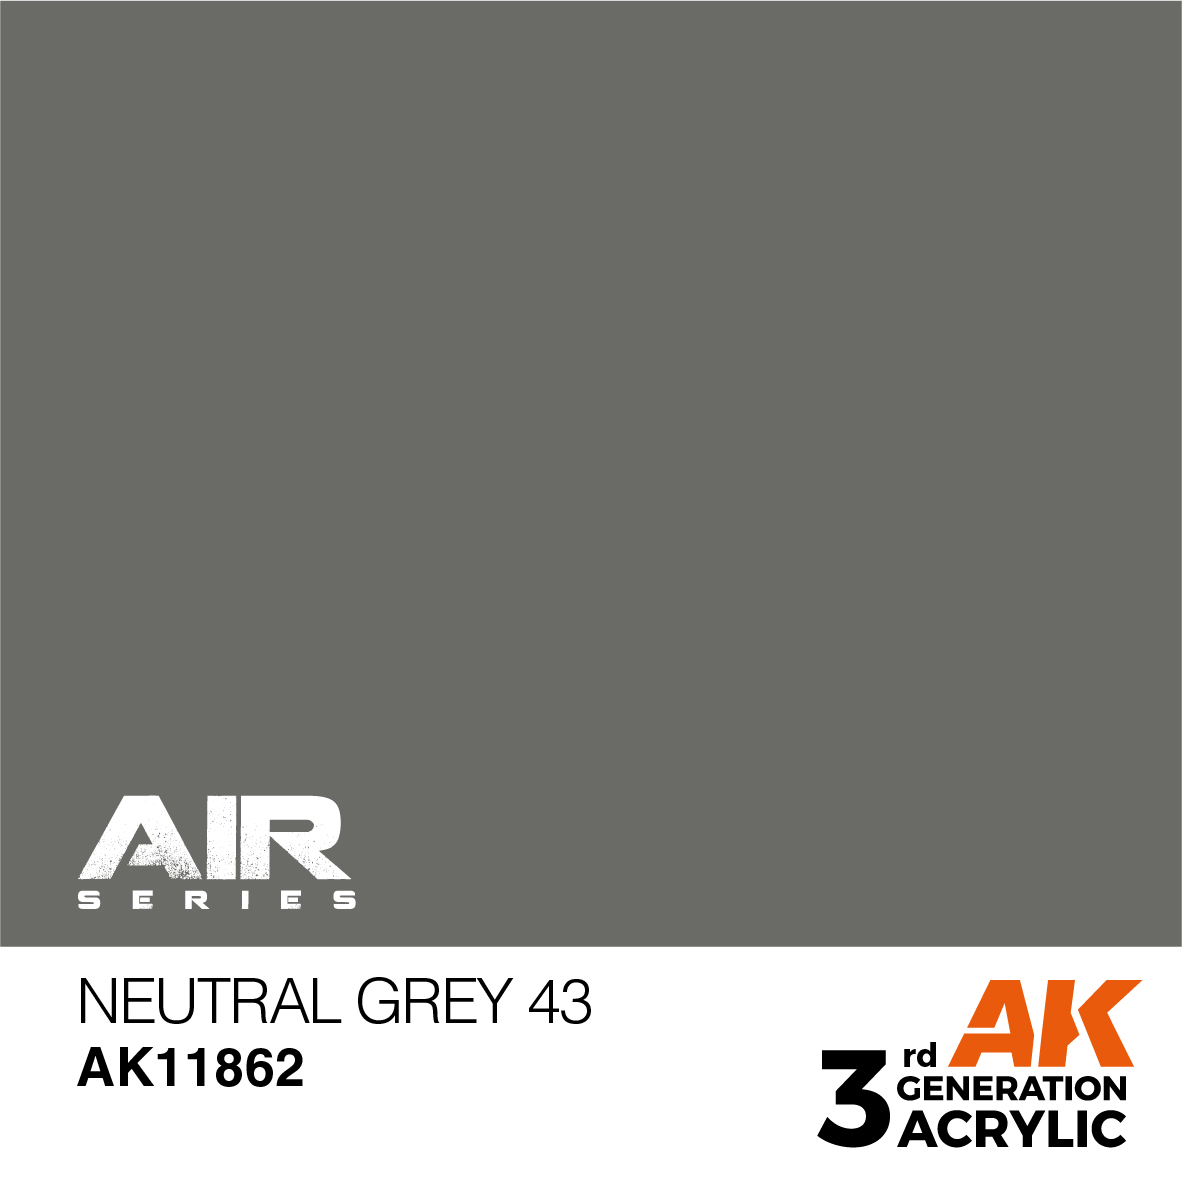 Neutral Grey 43 – AIR